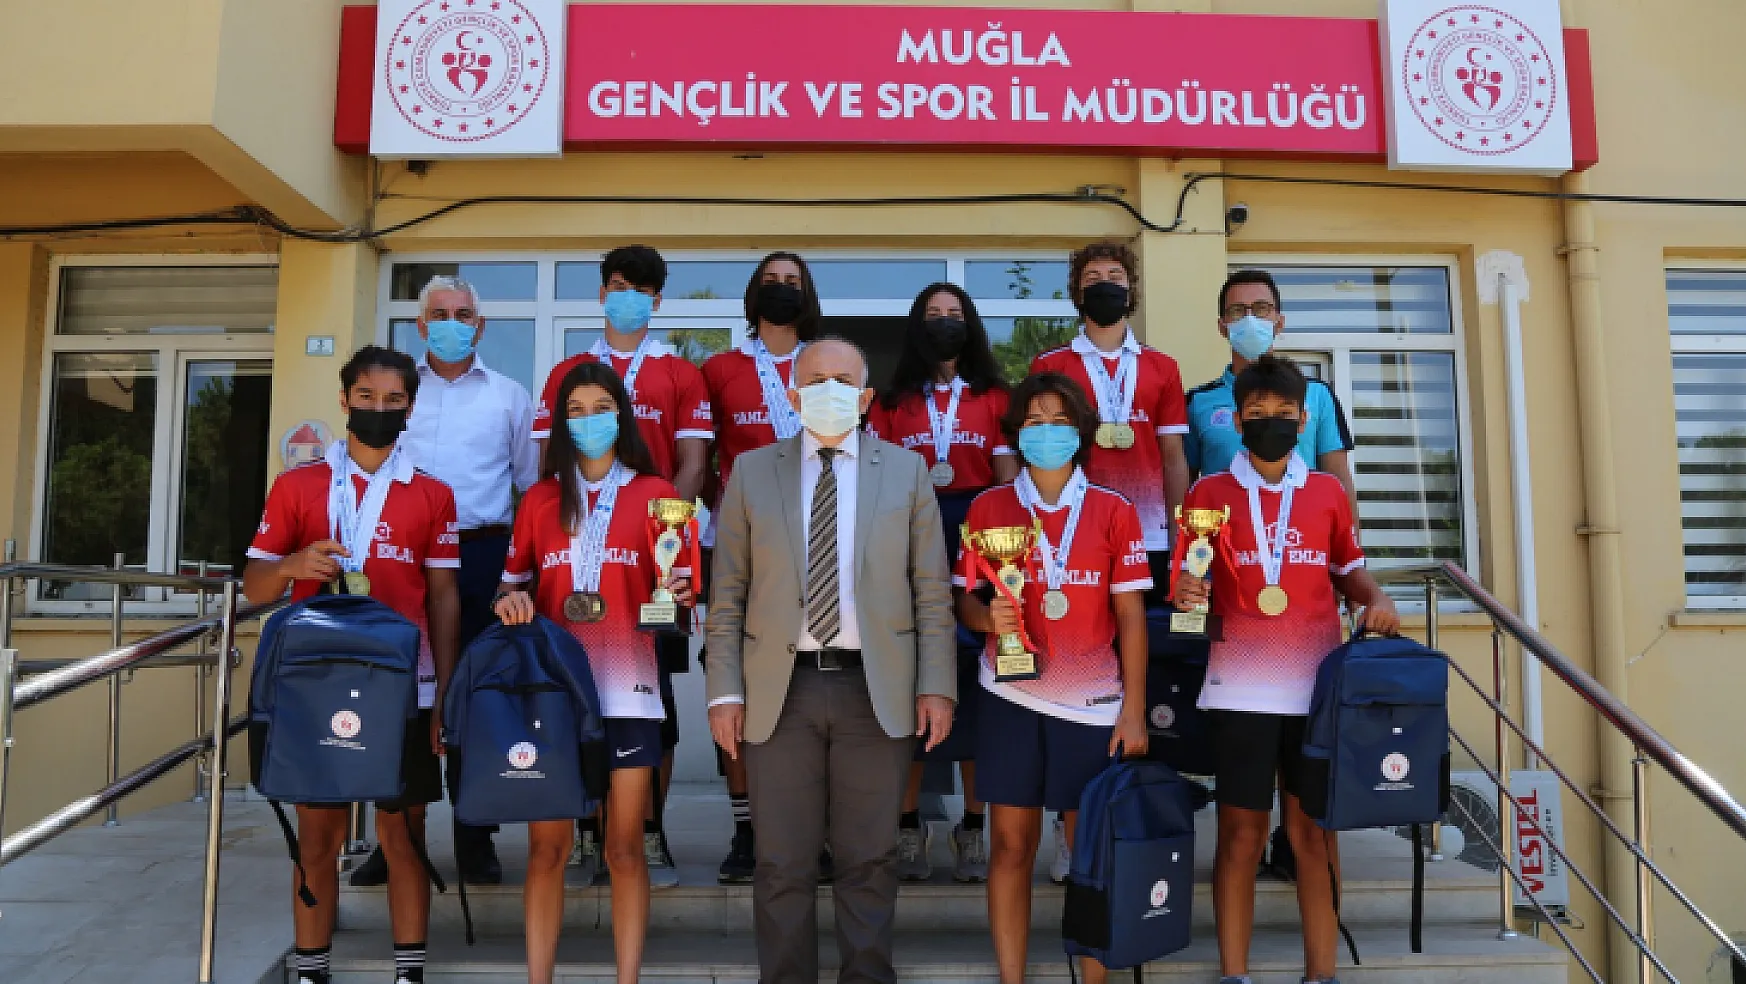 Muğla Gençlik ve Spor Kulübü Türkiye Şampiyonu oldu